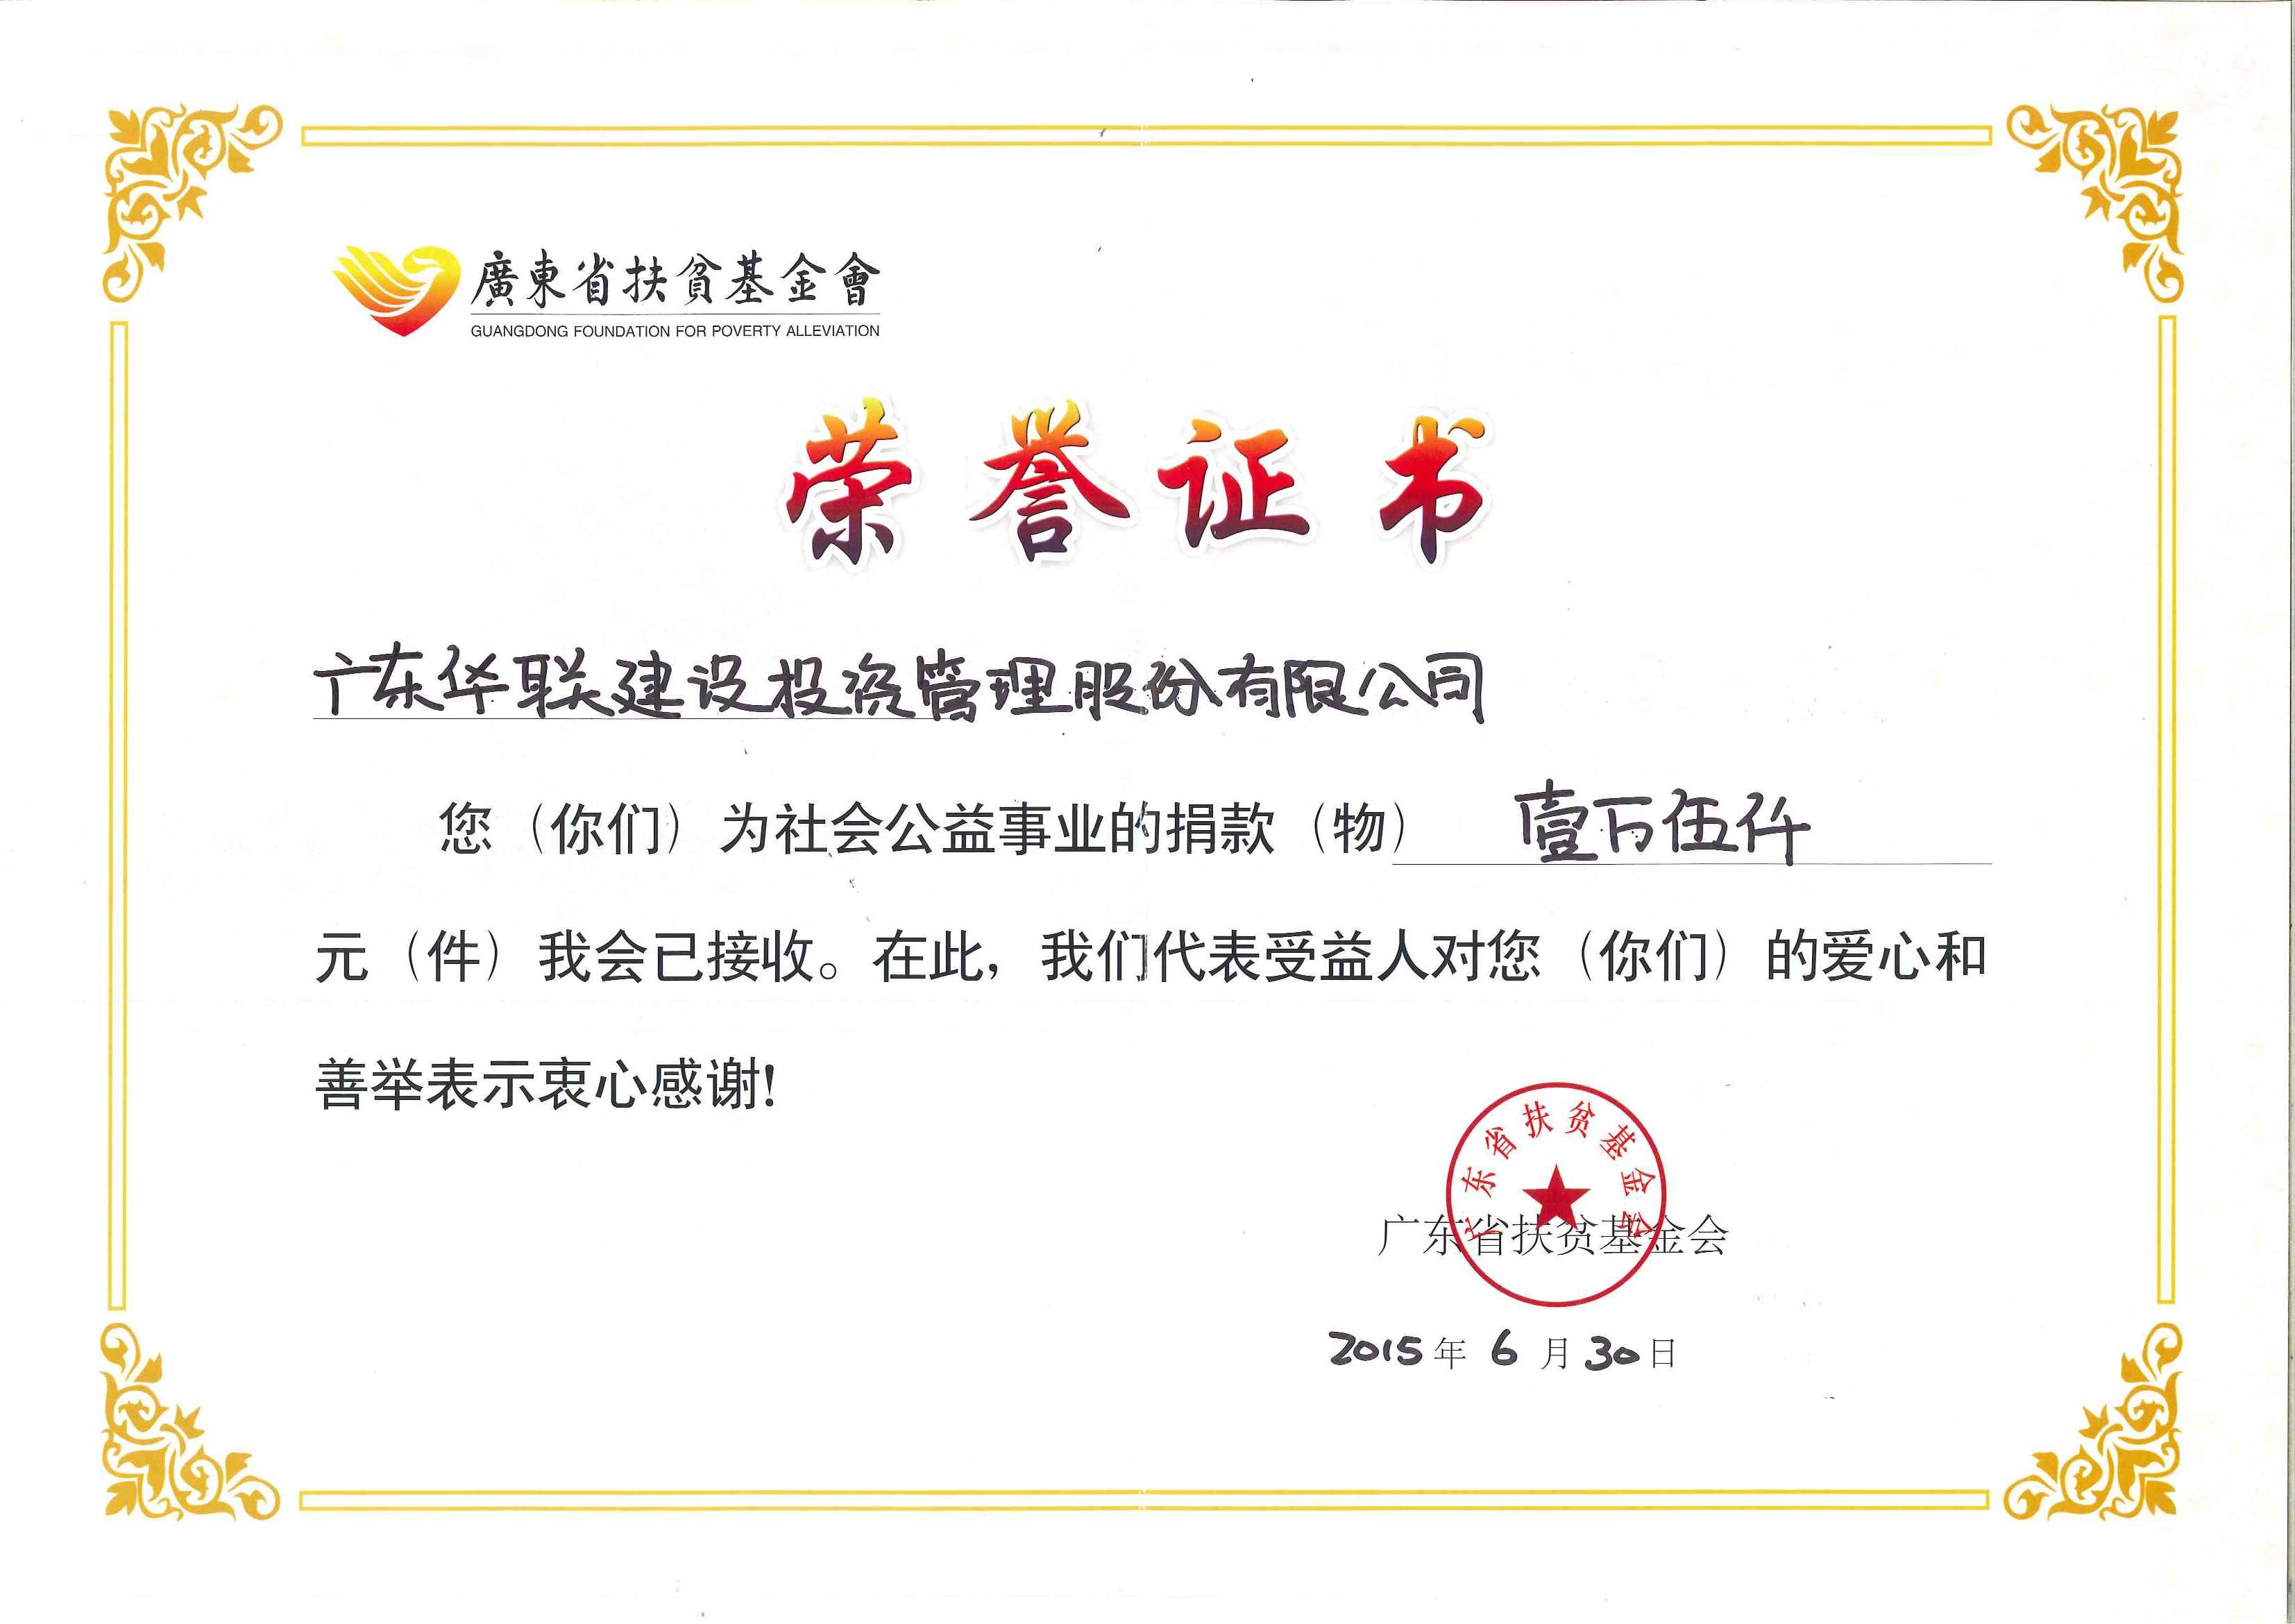 2015年广东扶贫济困捐赠协议书捐赠荣誉证书